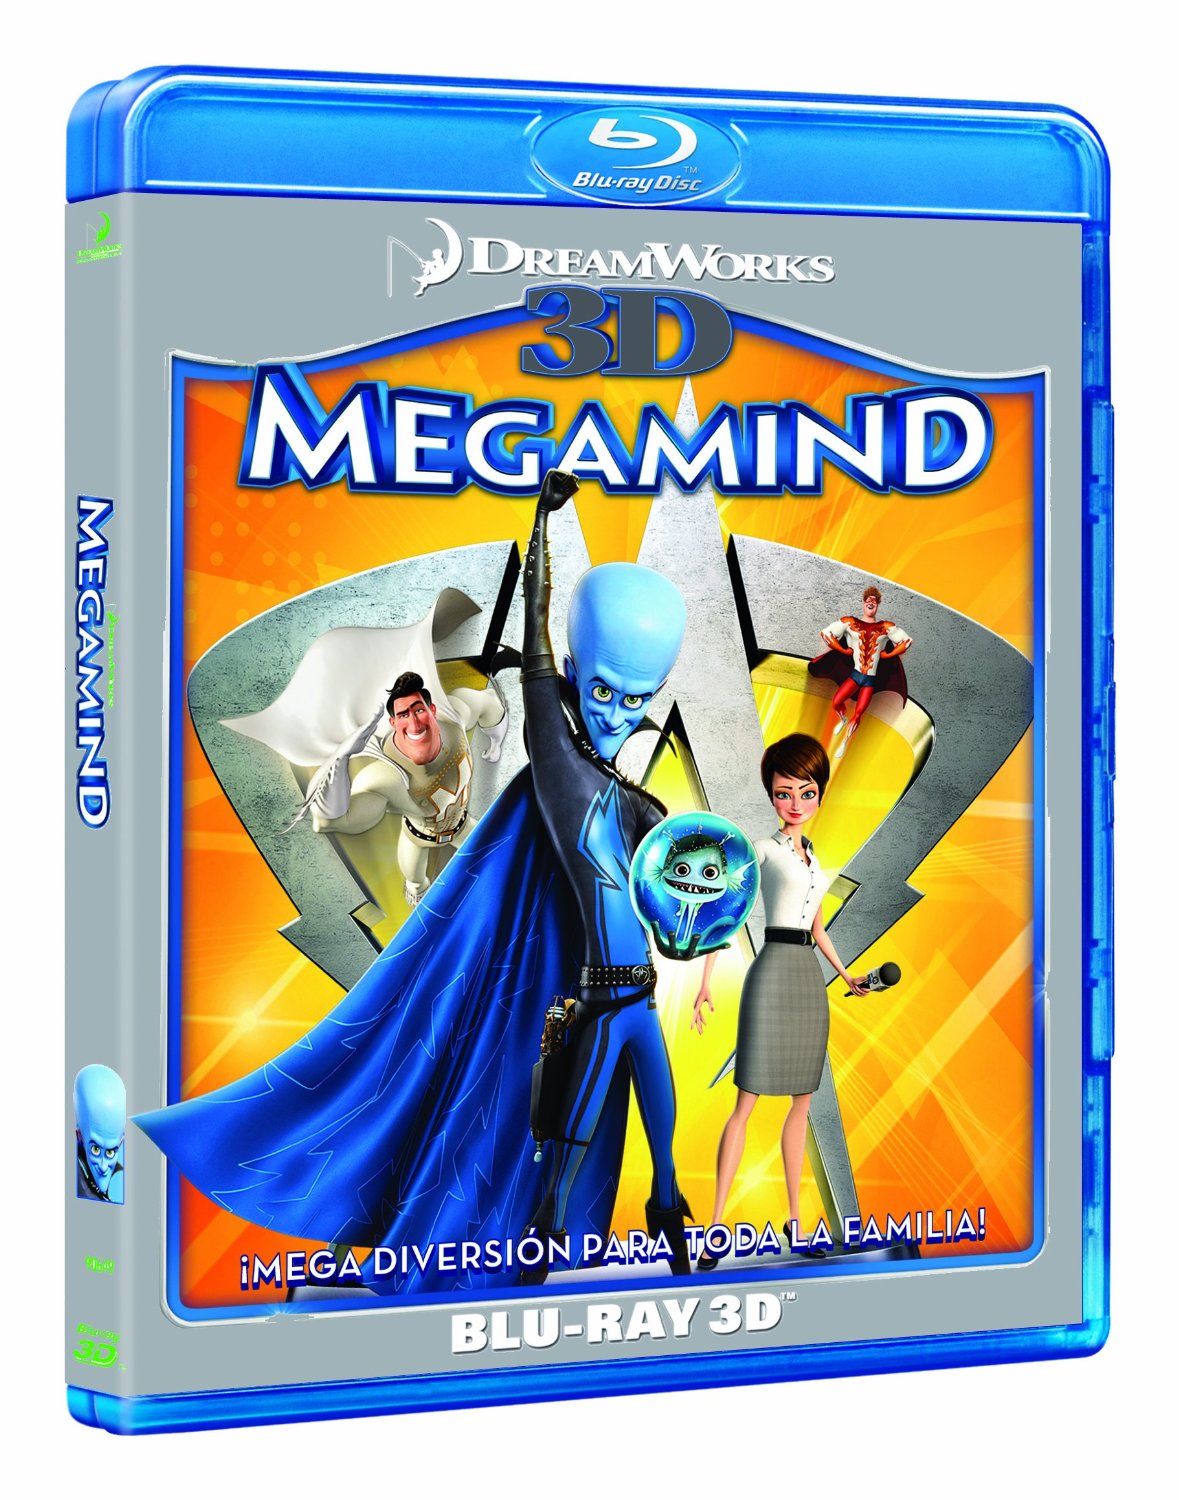 Megamind 3D